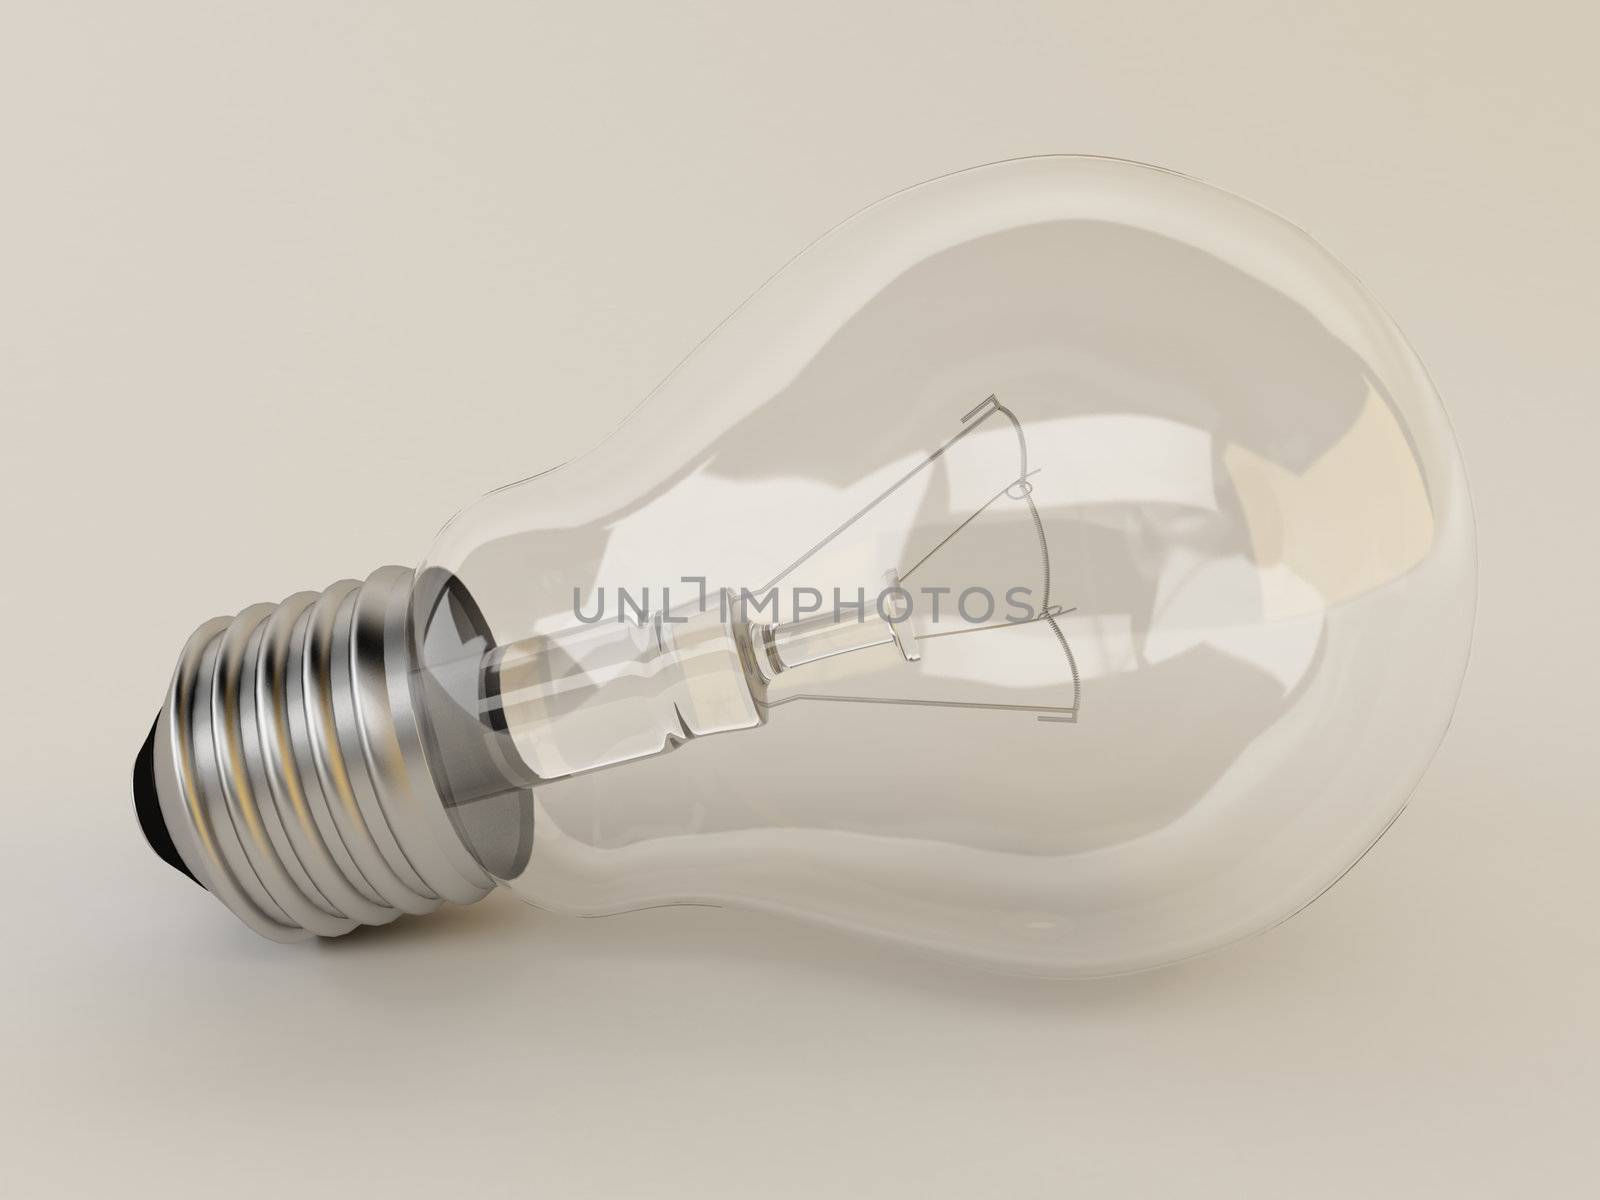 3d render light bulb lies on the surface